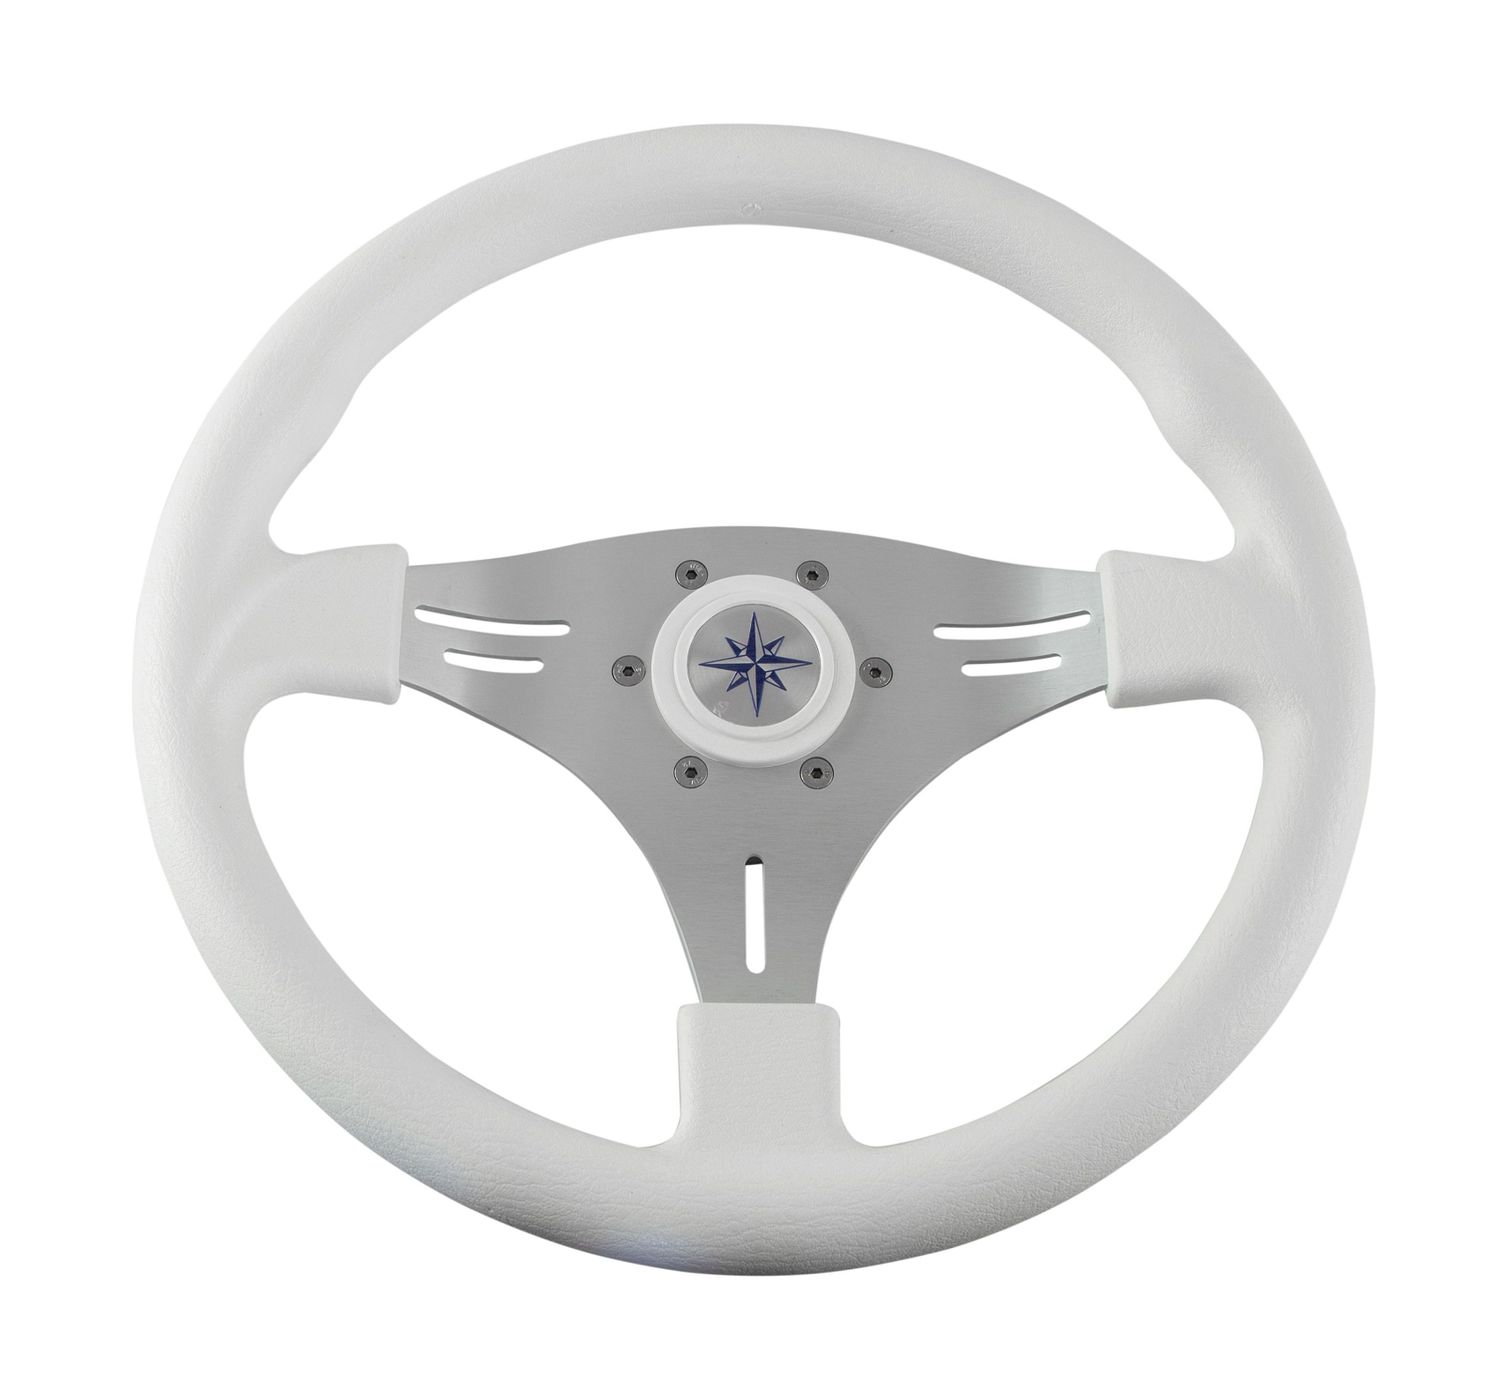 Рулевое колесо MANTA обод белый, спицы серебряные д. 355 мм VN70551-08 рулевое колесо leader plast белый обод серебряные спицы д 360 мм vn8360 08